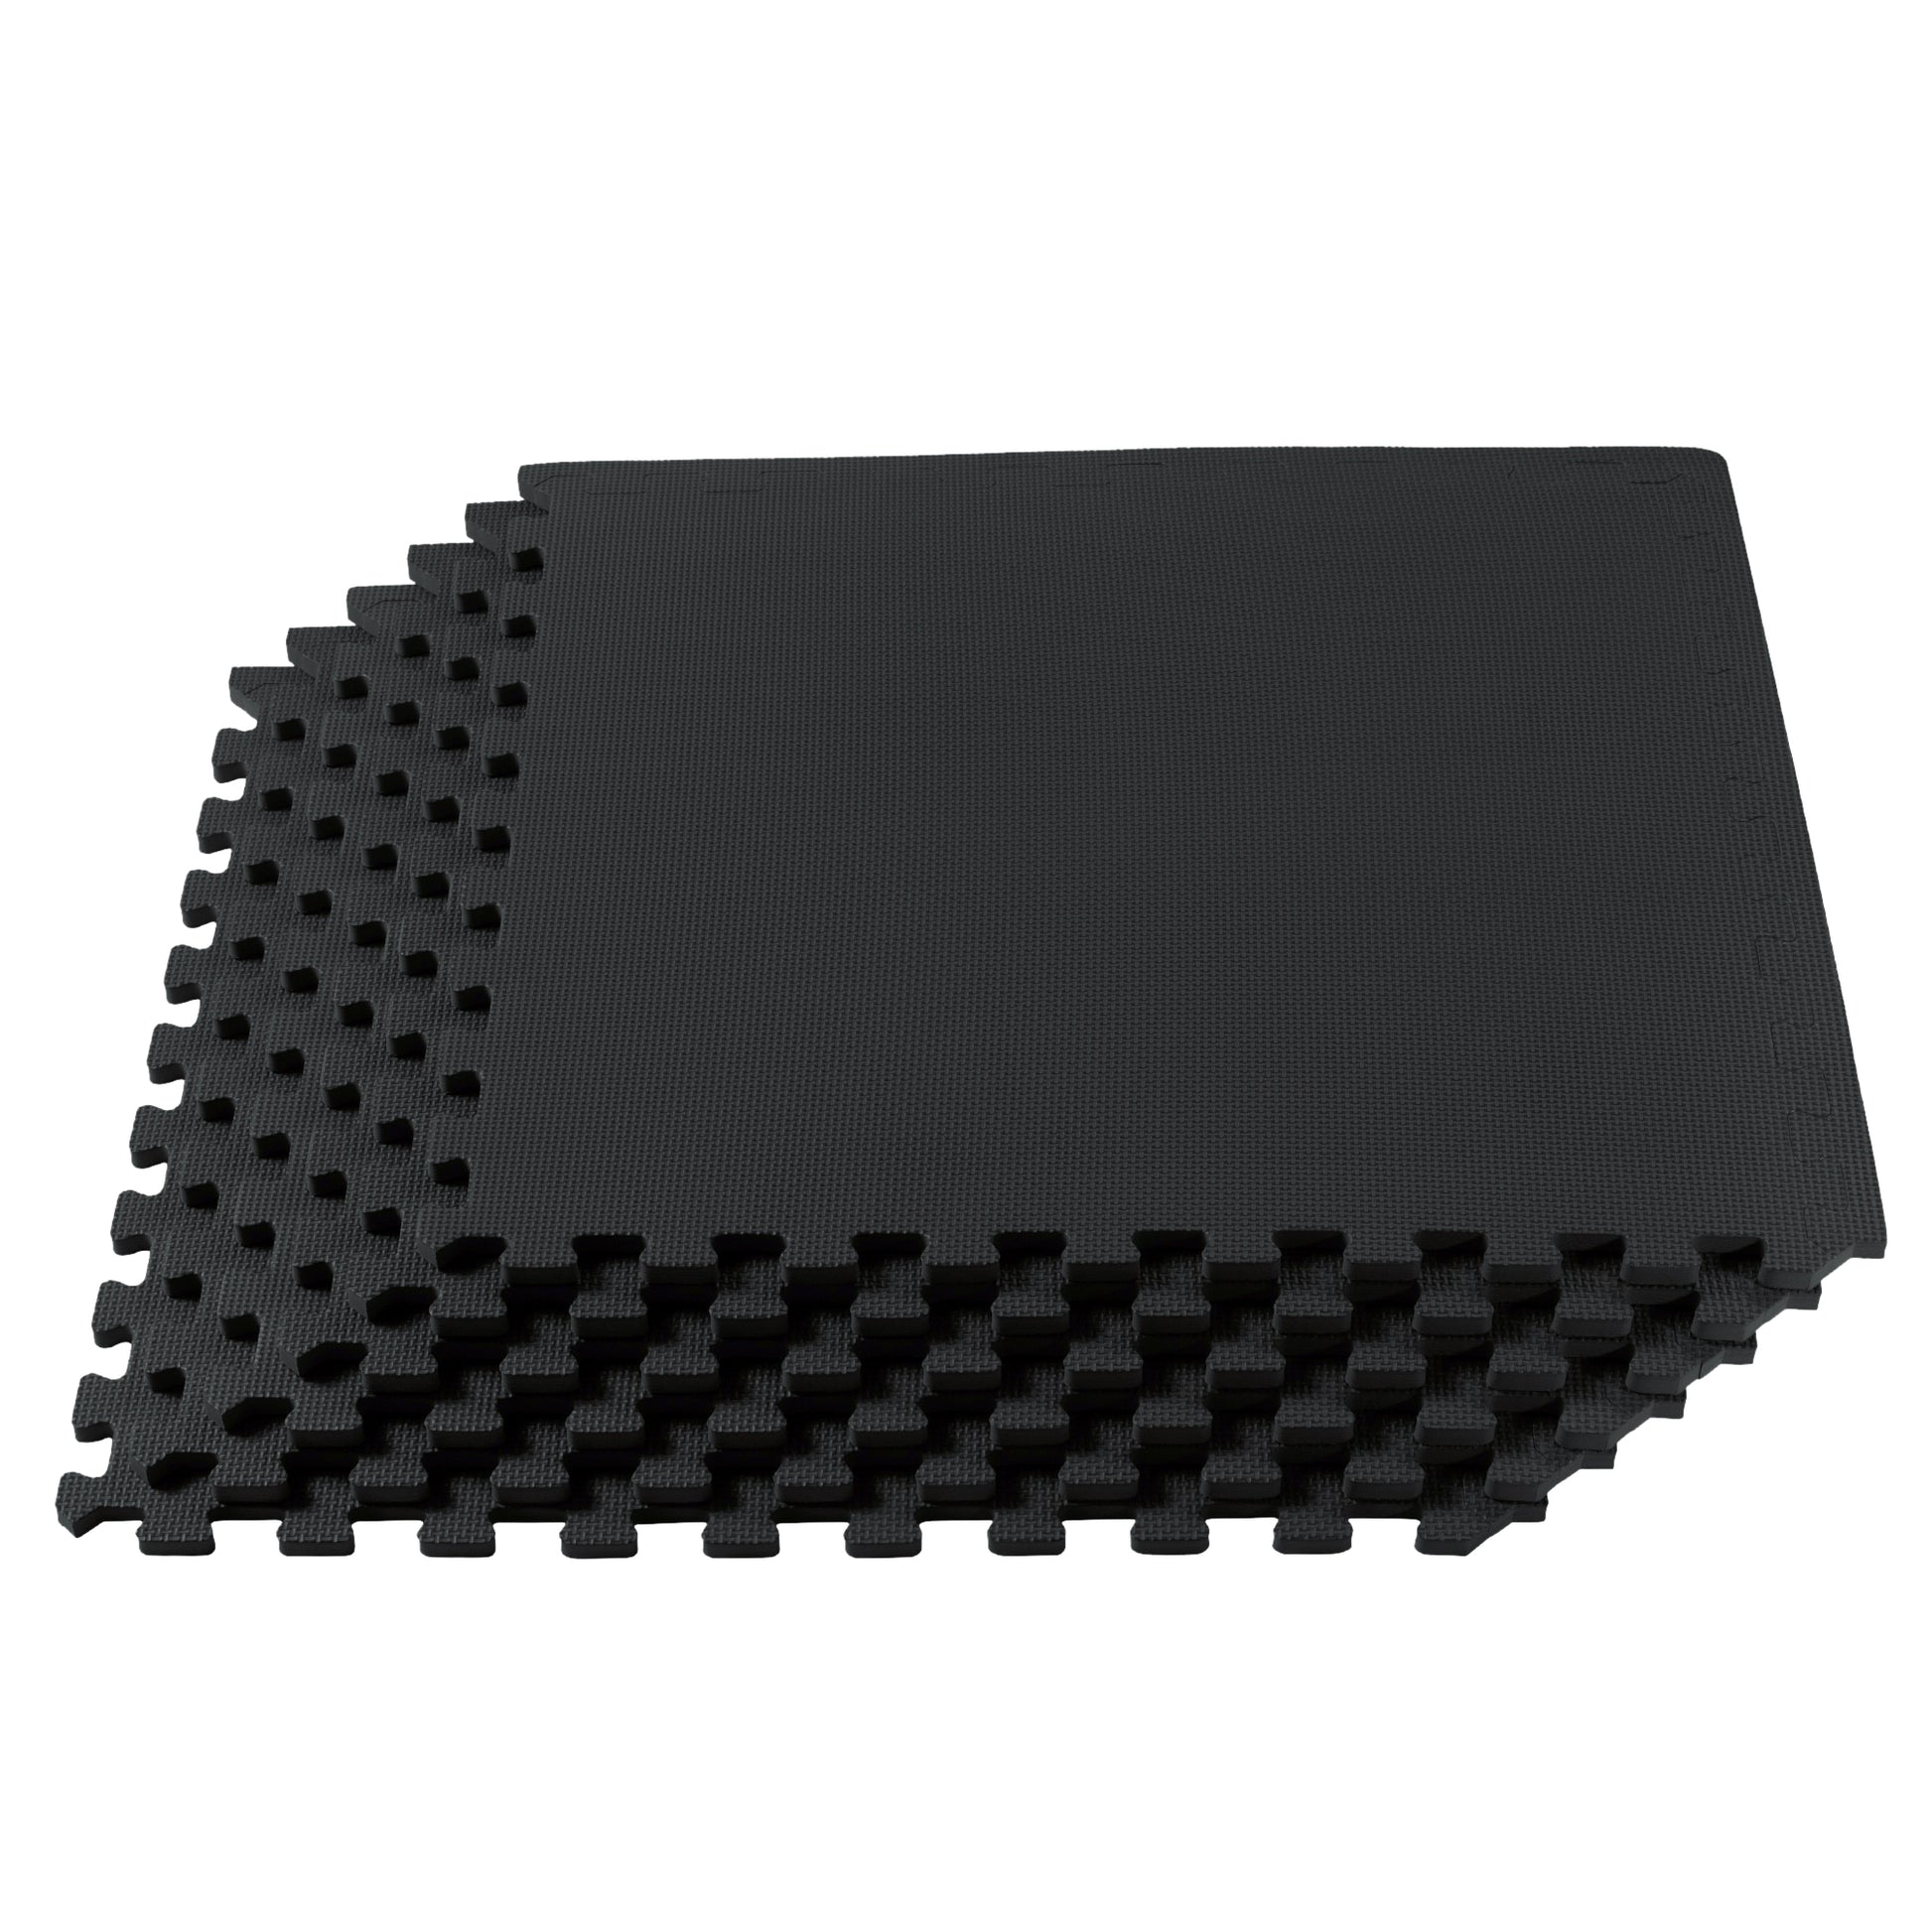 24 in. x 36 in. Multipurpose Black Rubber Mat